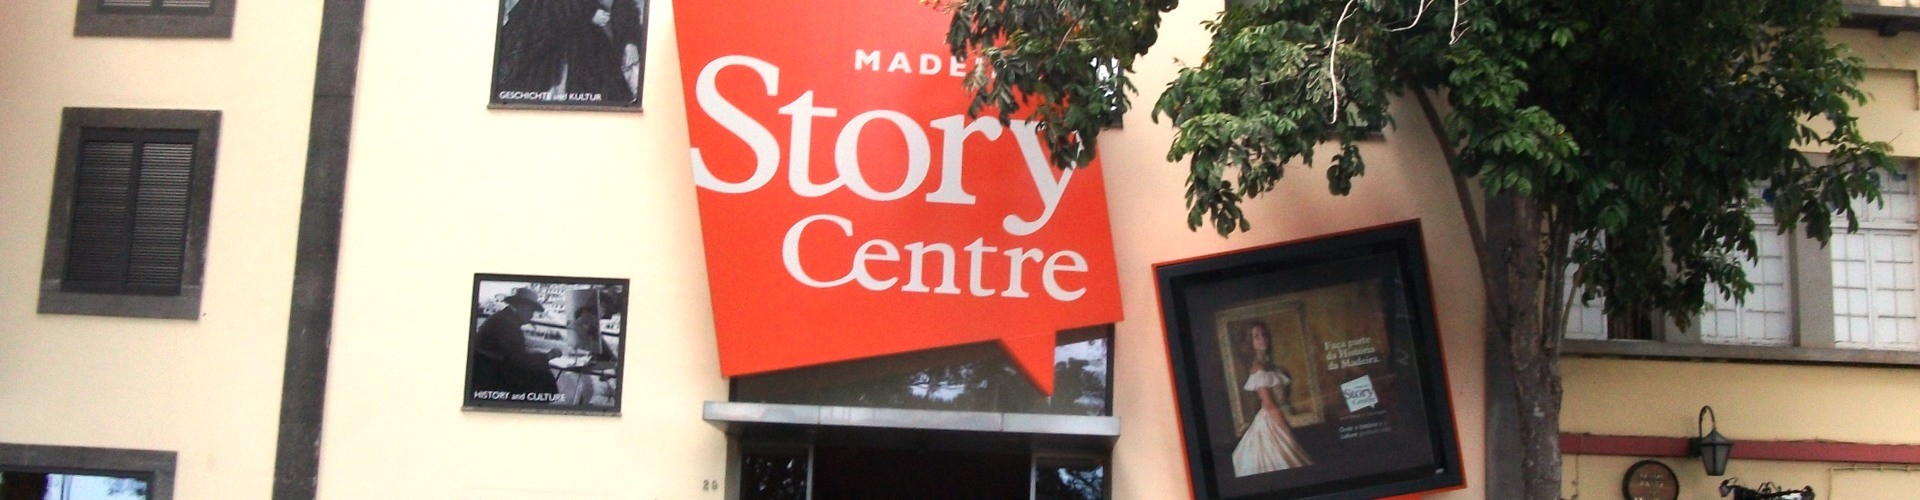 Madeira Story Centre